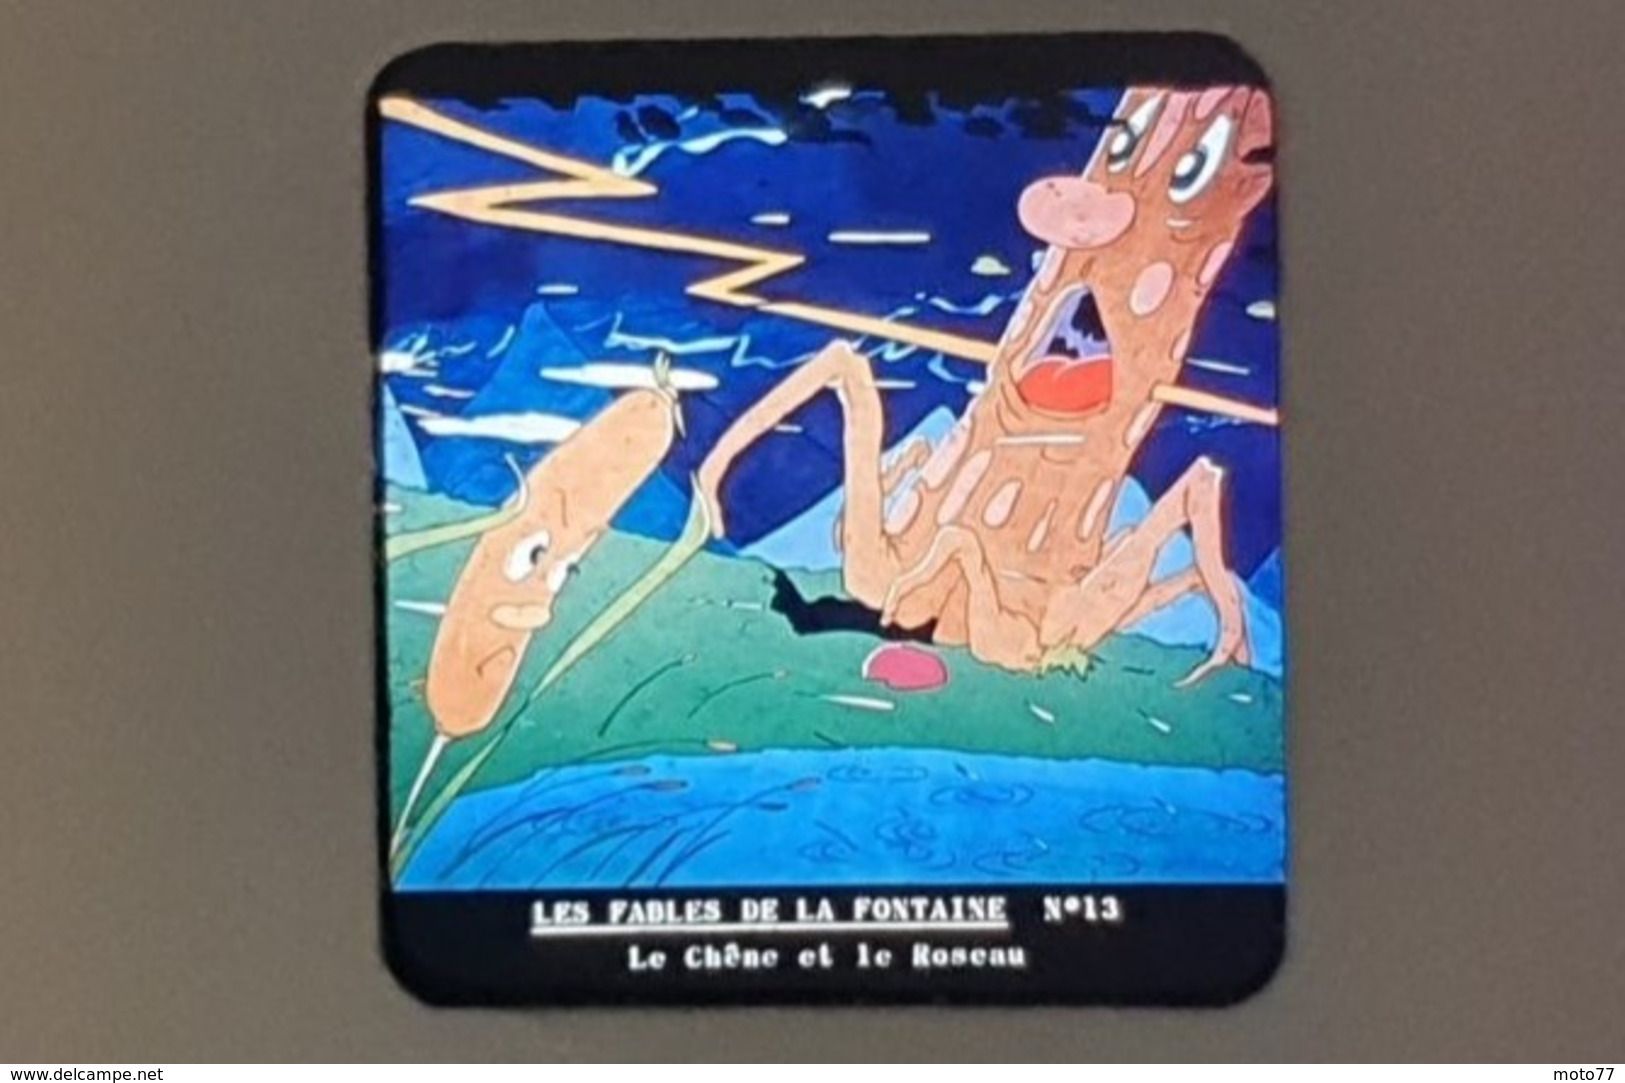 Rare 2 STÉRÉOCARTES - Vues en  RELIEF et en COULEUR pour Boitier lumineux stéréoscopique - Fables de La Fontaine - 1963